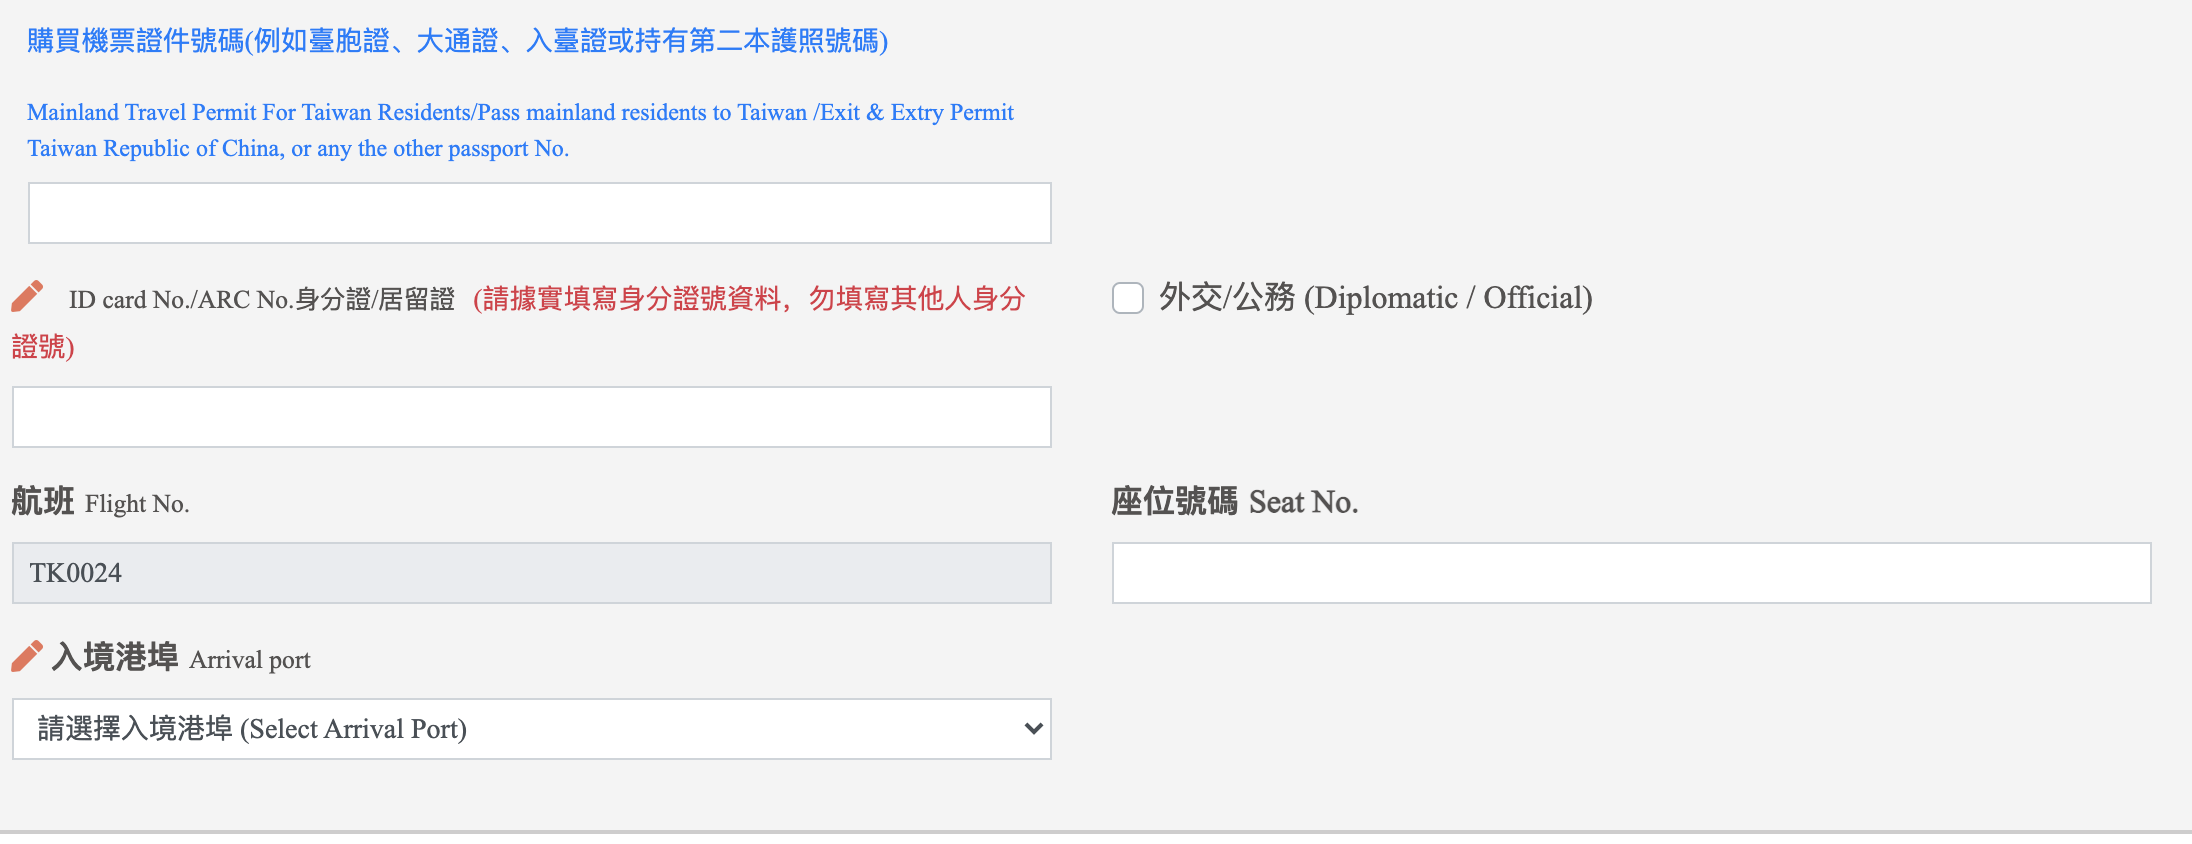 台灣入境檢疫系統表格填寫、啟程地申報證明以及注意事項